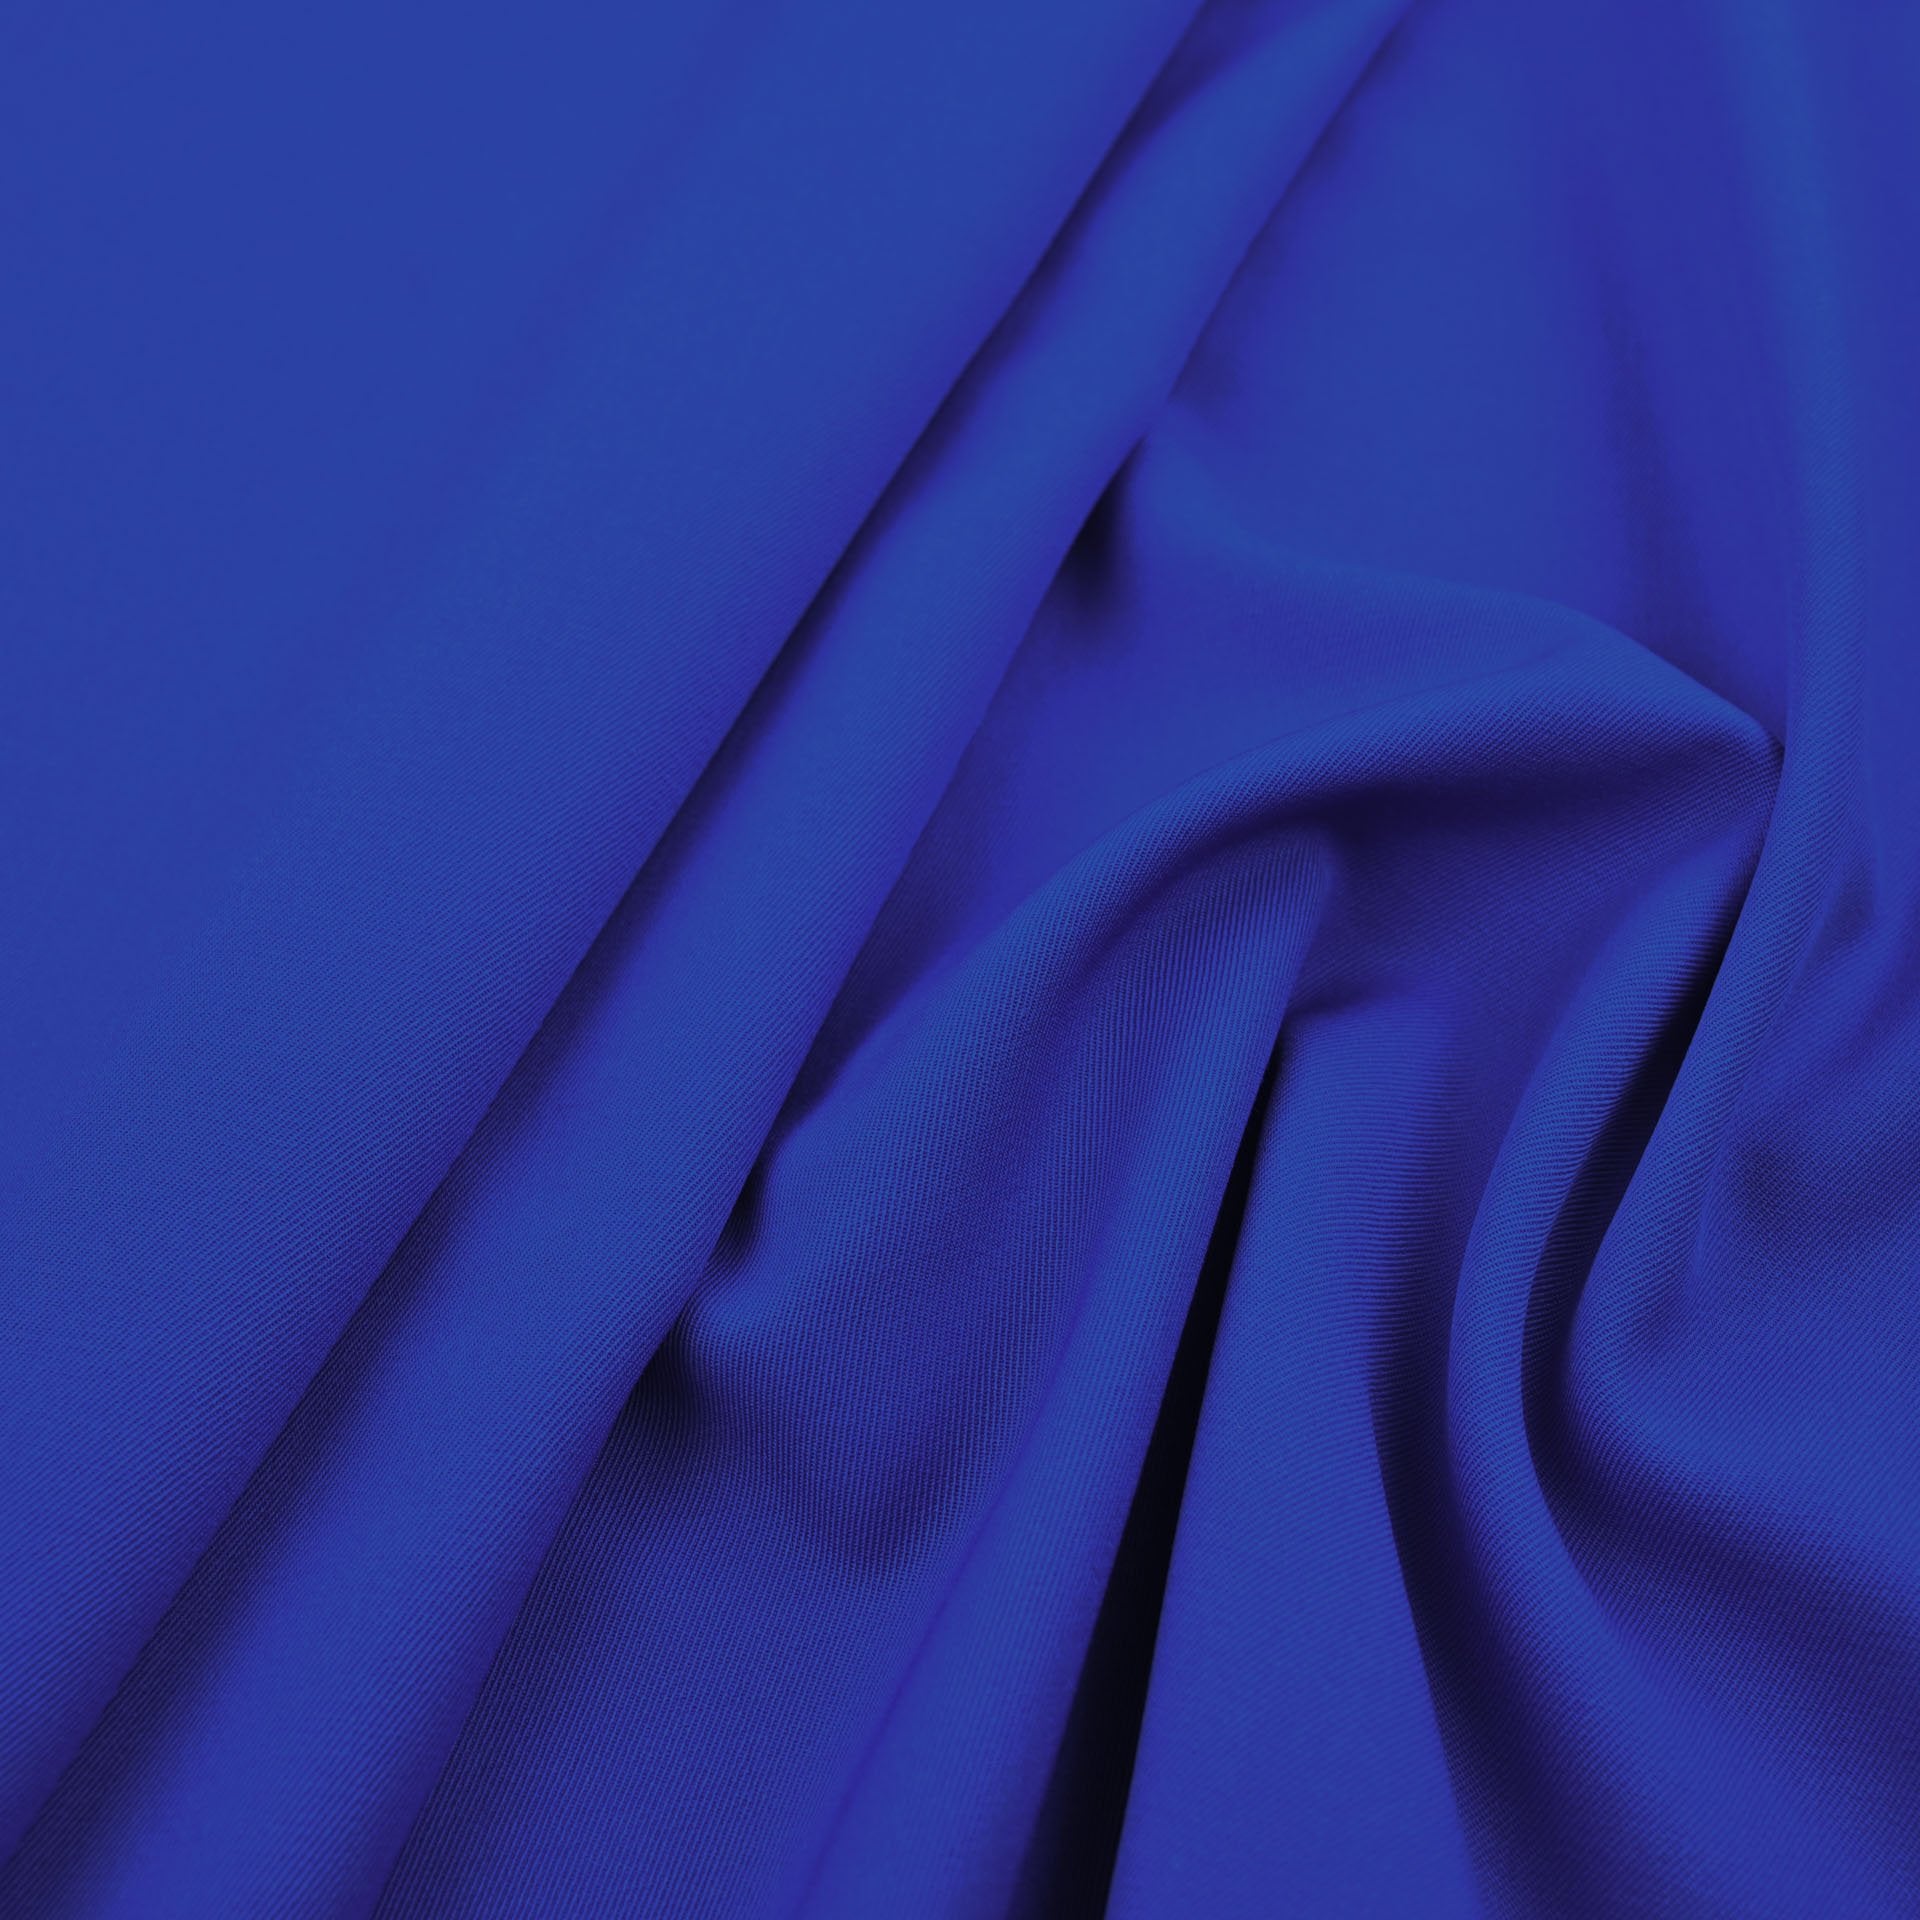 Royal Blue Twill Fabric 4607